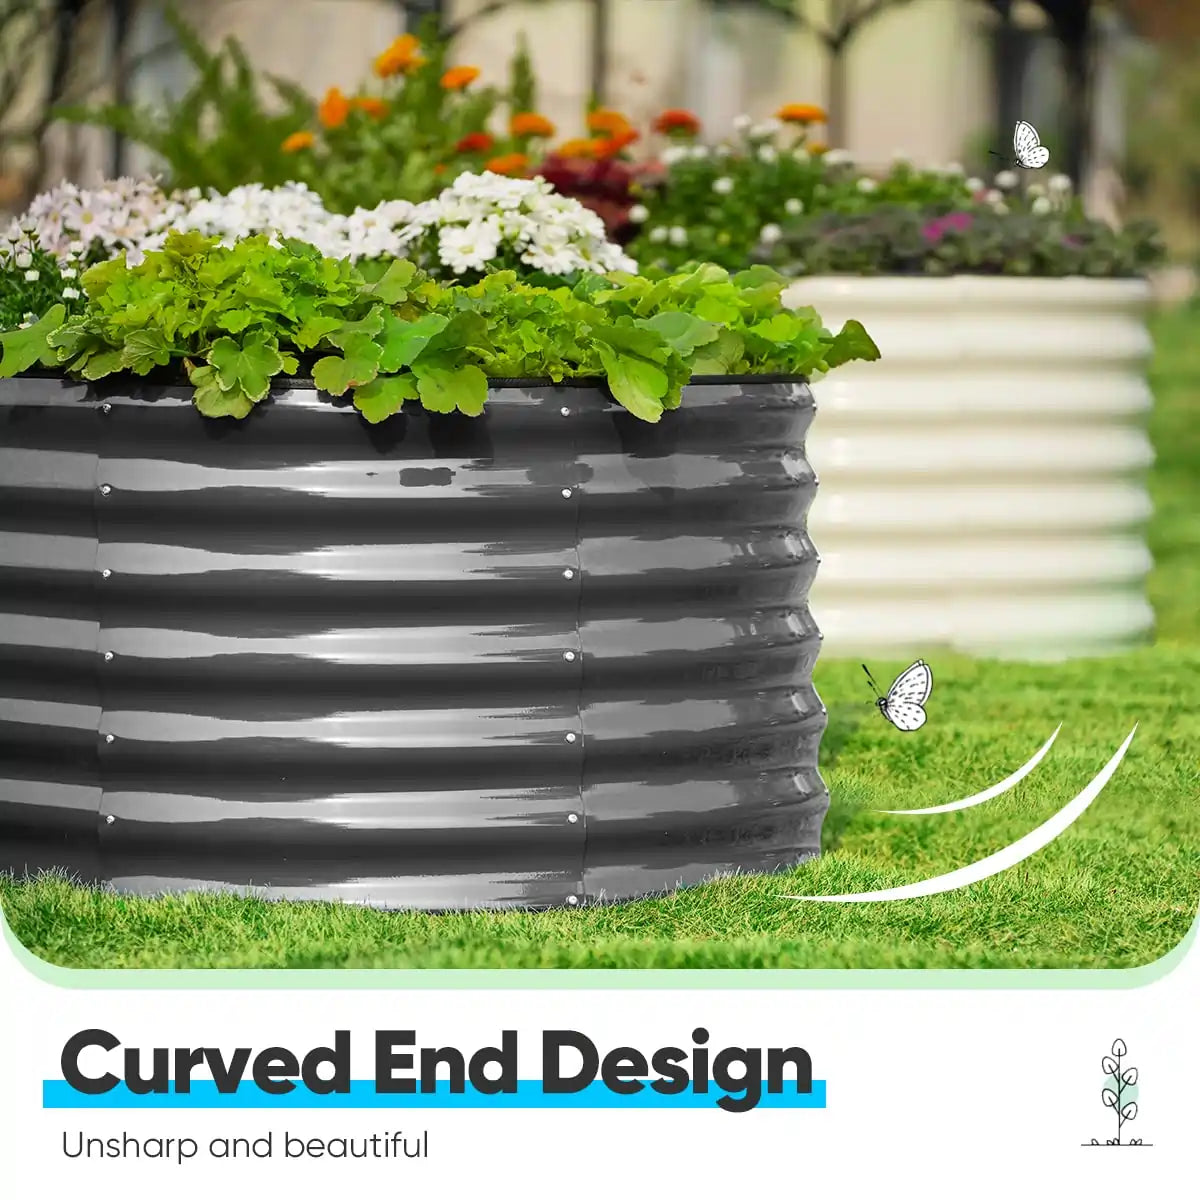 6' x 3' x 2' Oval Garden Bed special design#color_dark grey